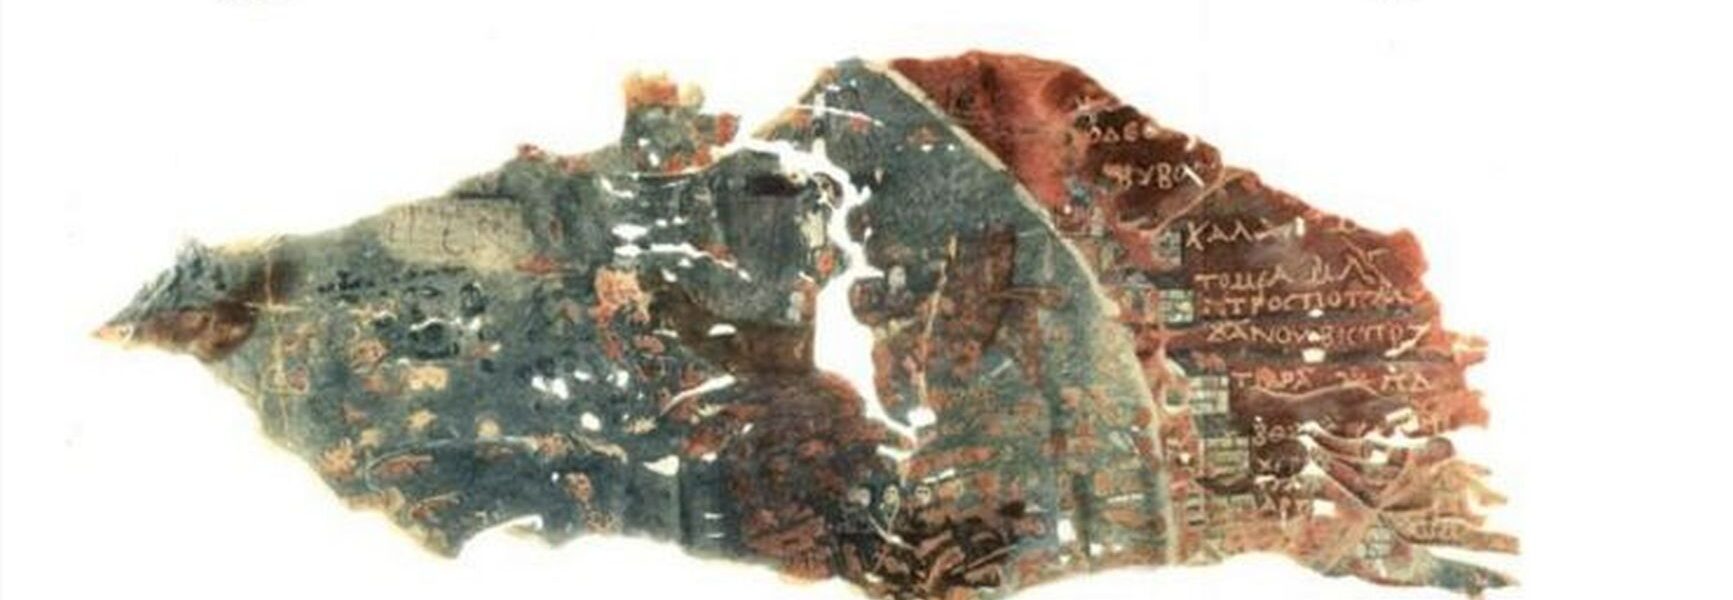 Scutul pictat de la Dura Europos (Siria), un itinerar al Dobrogei antice, găsit pe malul Eufratului